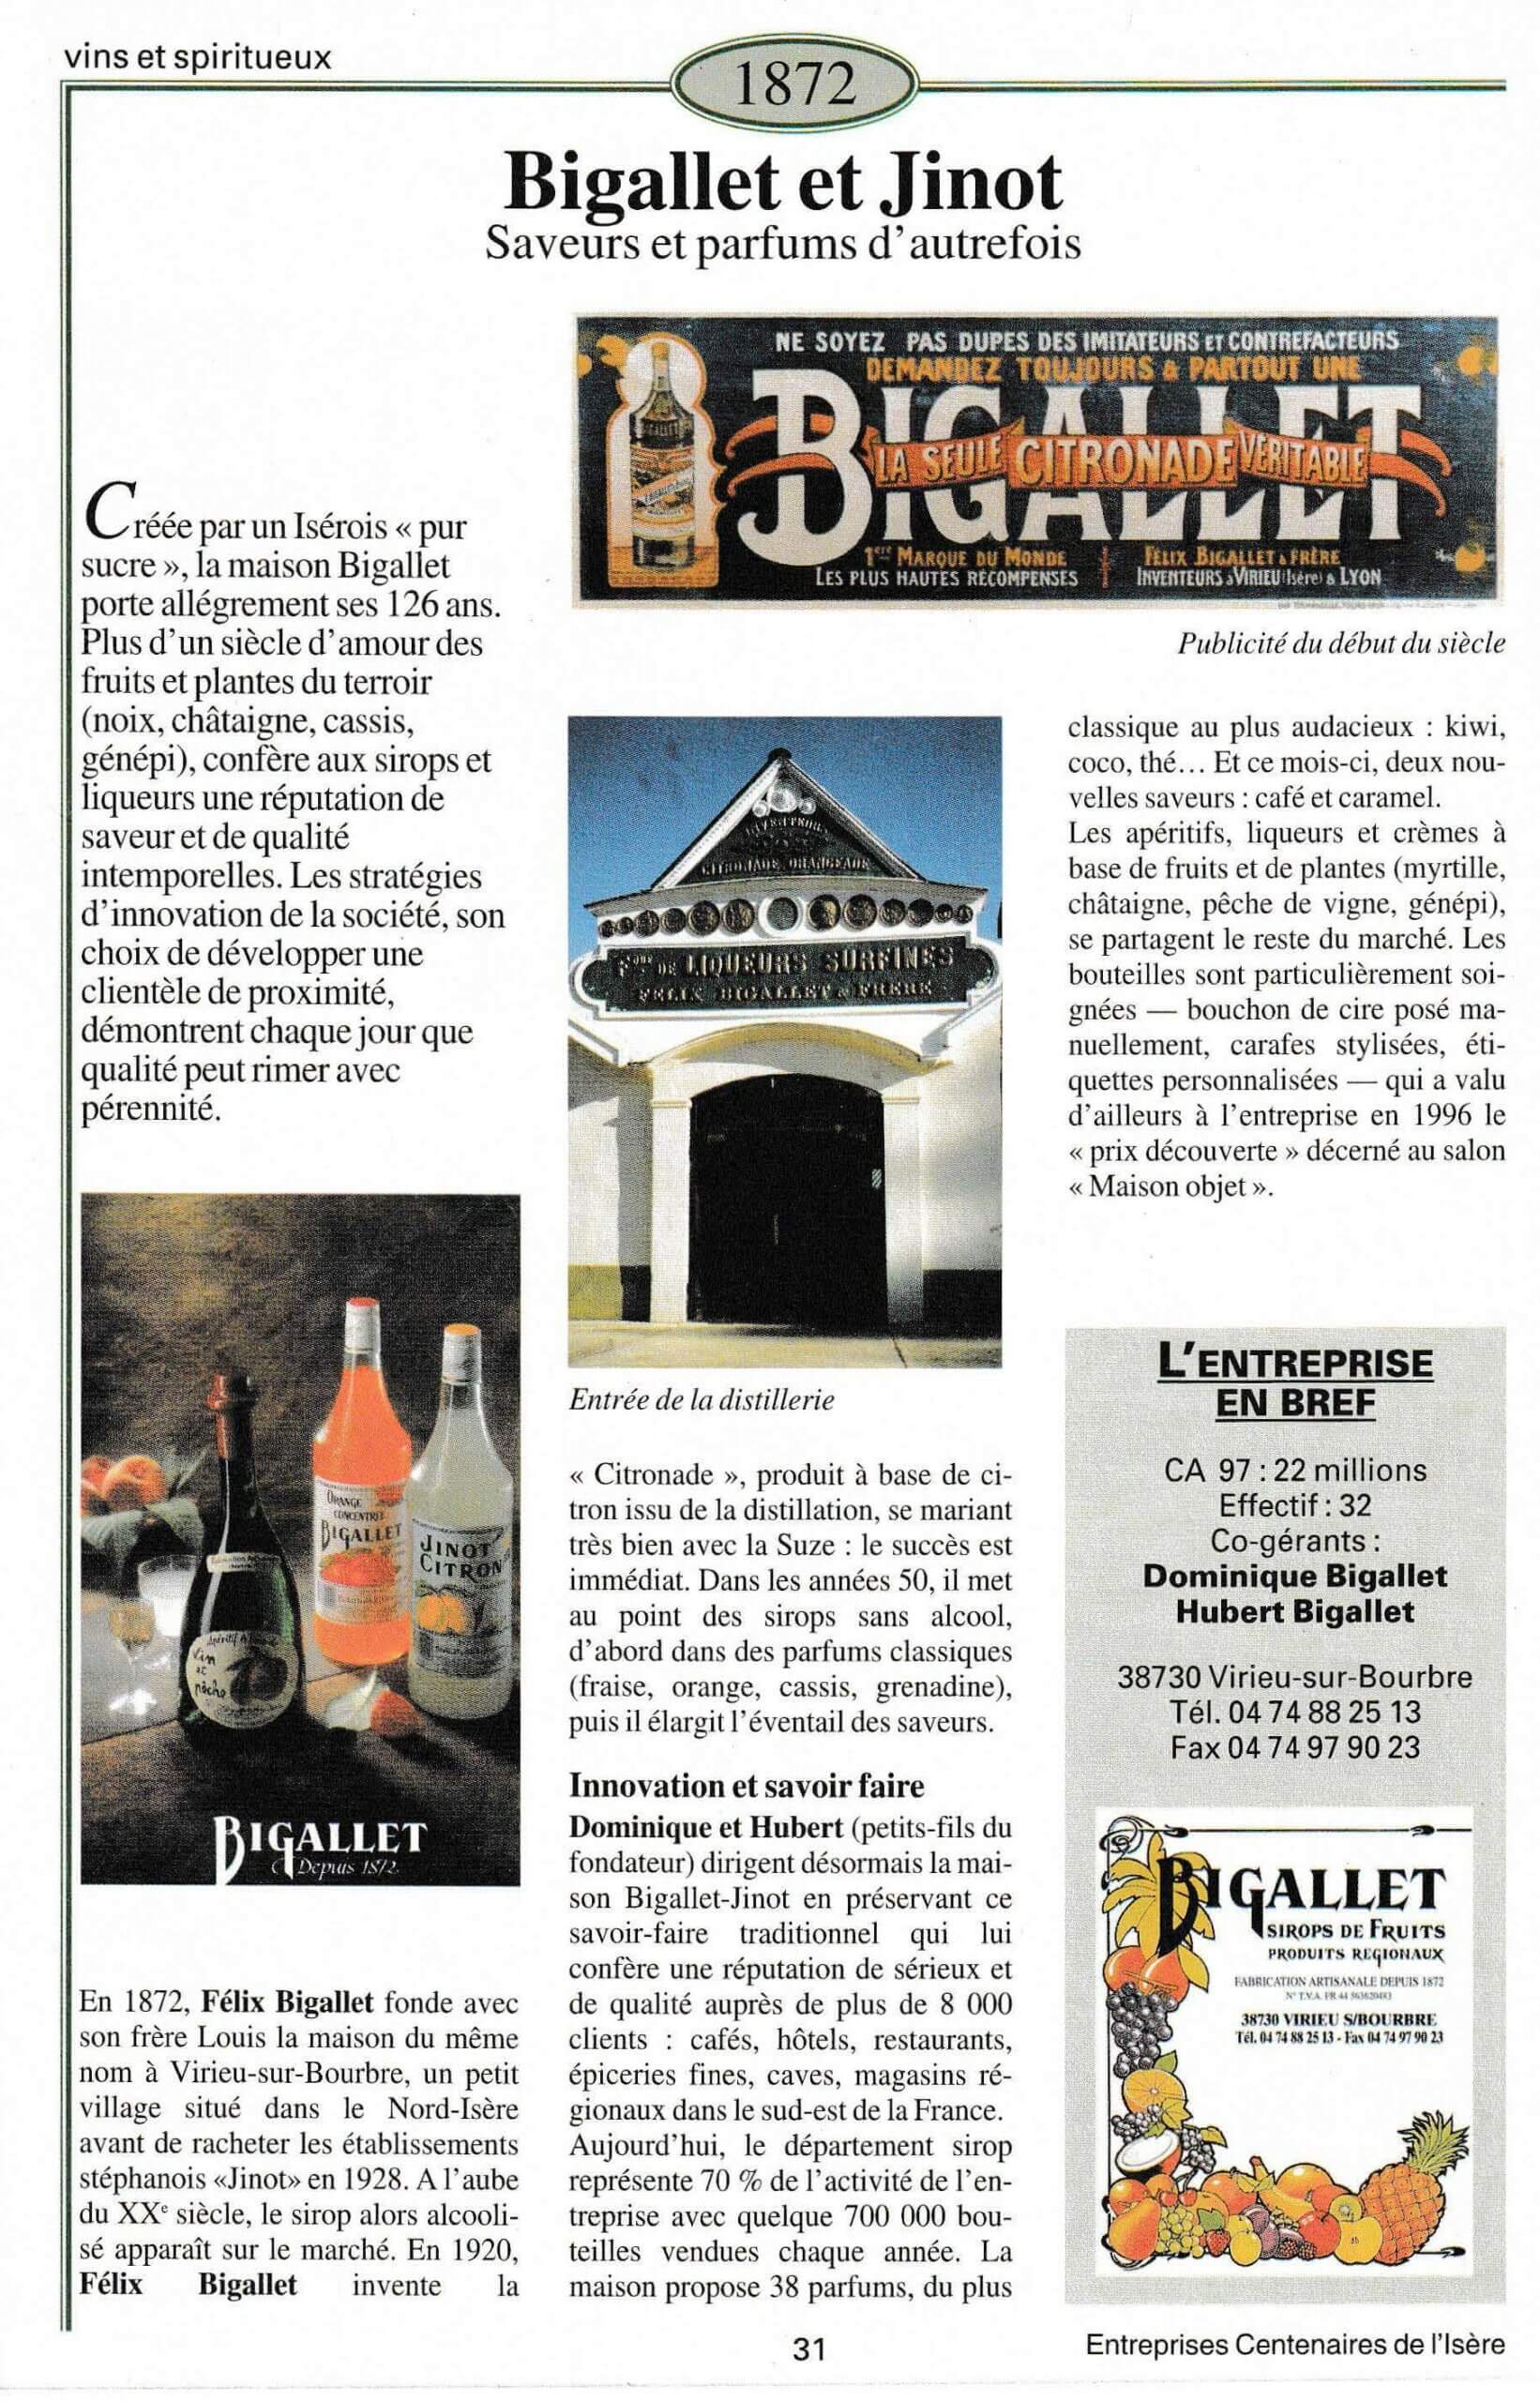 Bigallet et Ginot - fiche du supplément "Entreprises centenaires en Isère", publié par Les affiches de Grenoble et du Dauphiné, juin 1998.